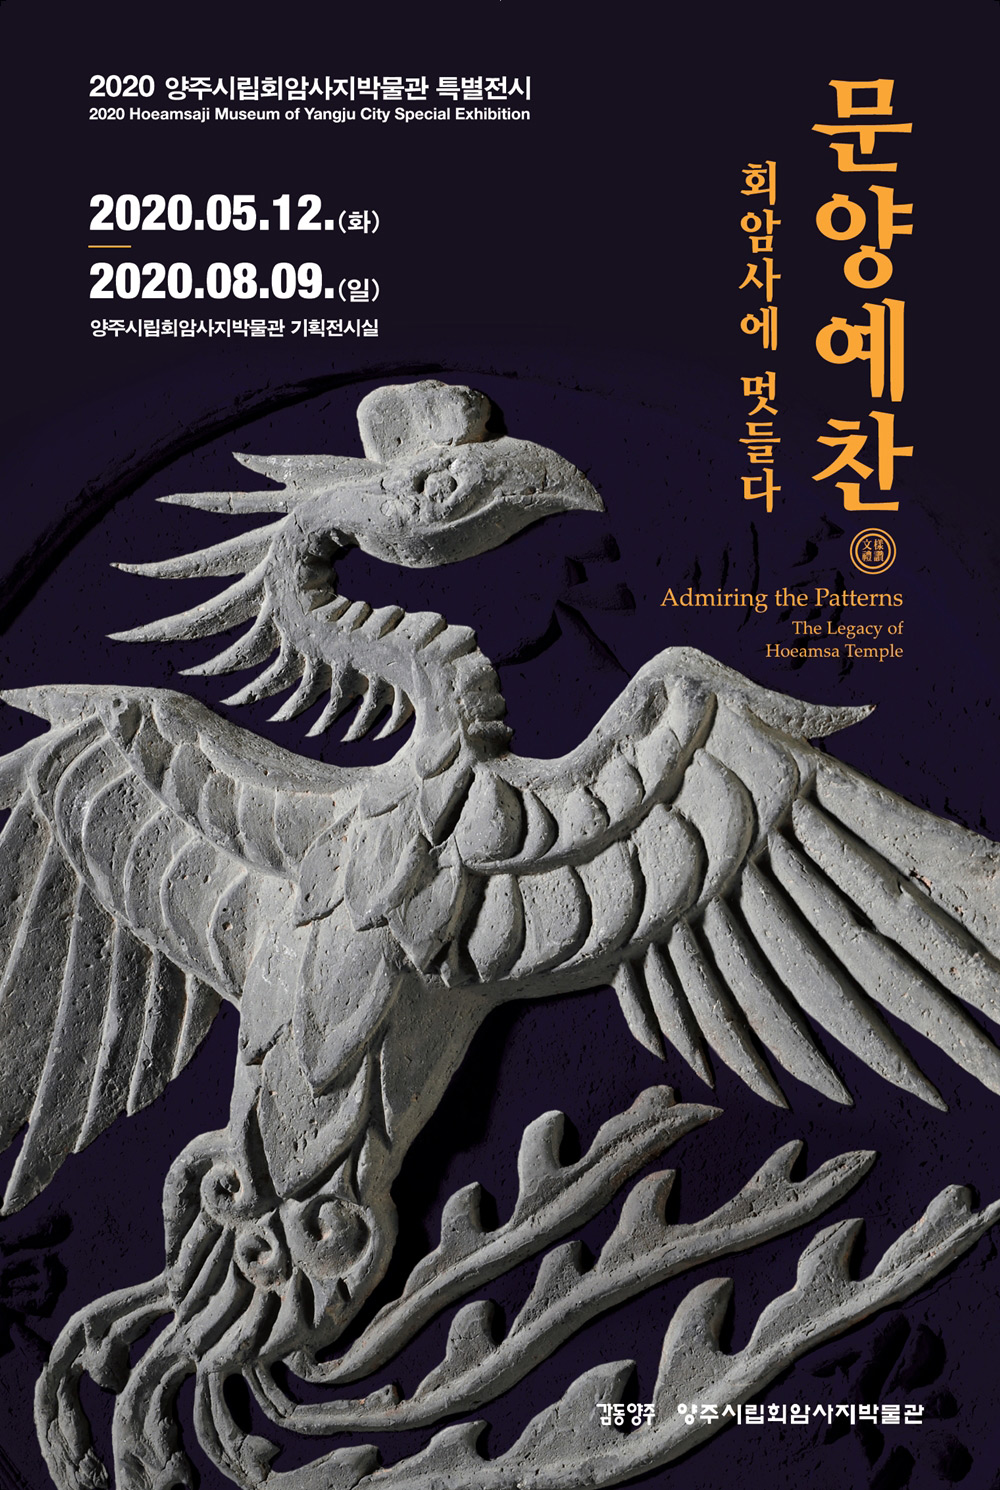 16款创意的韩文活动海报